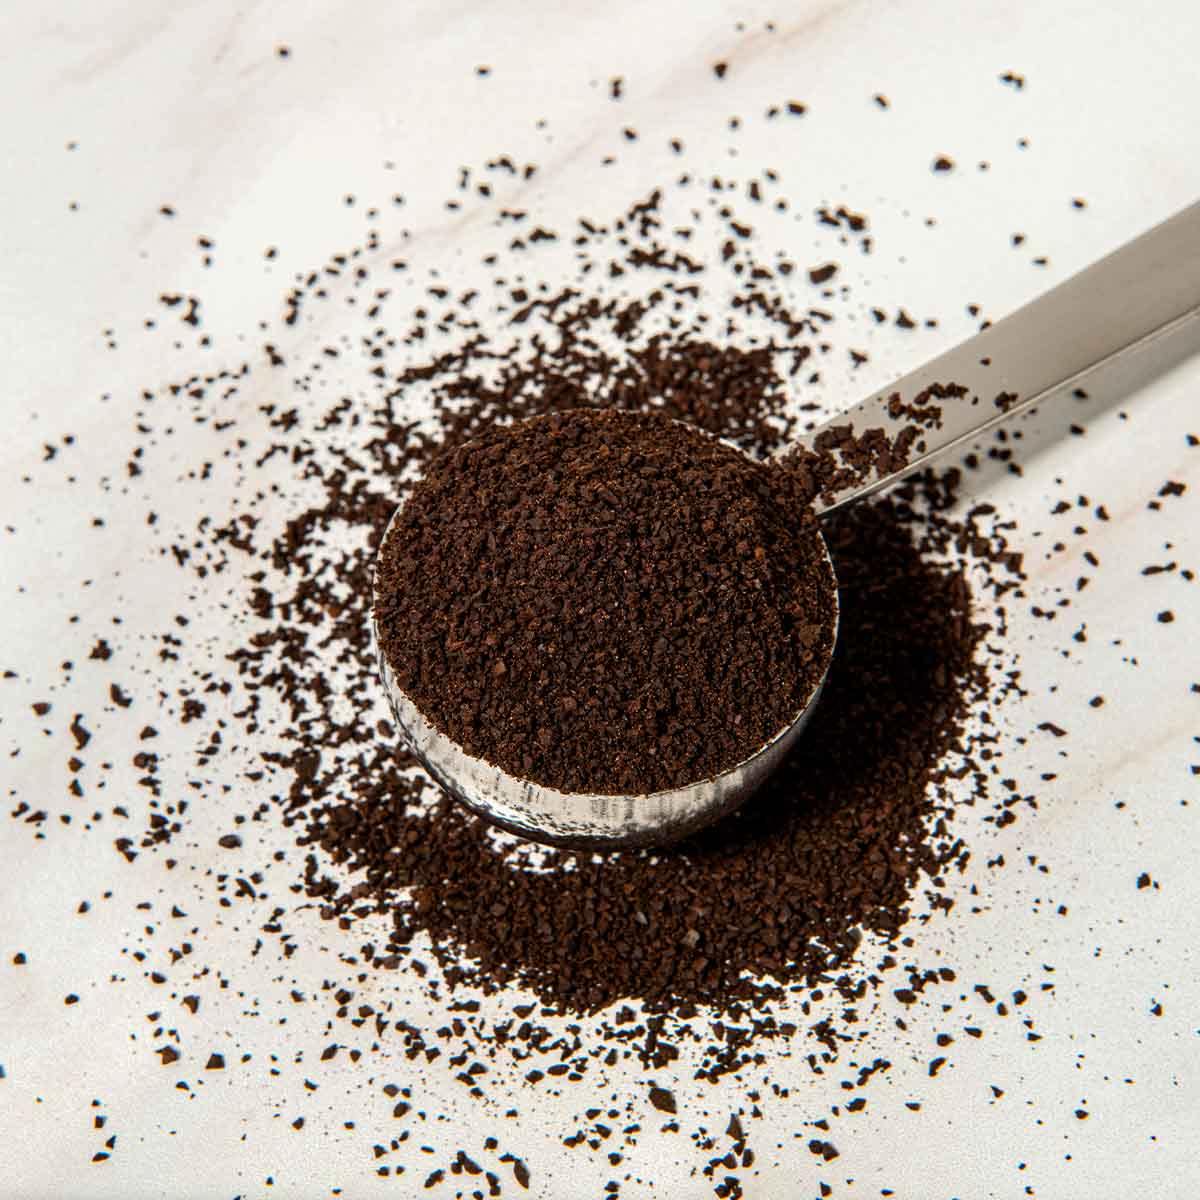 Bulletproof Coffee – Food Thinkers